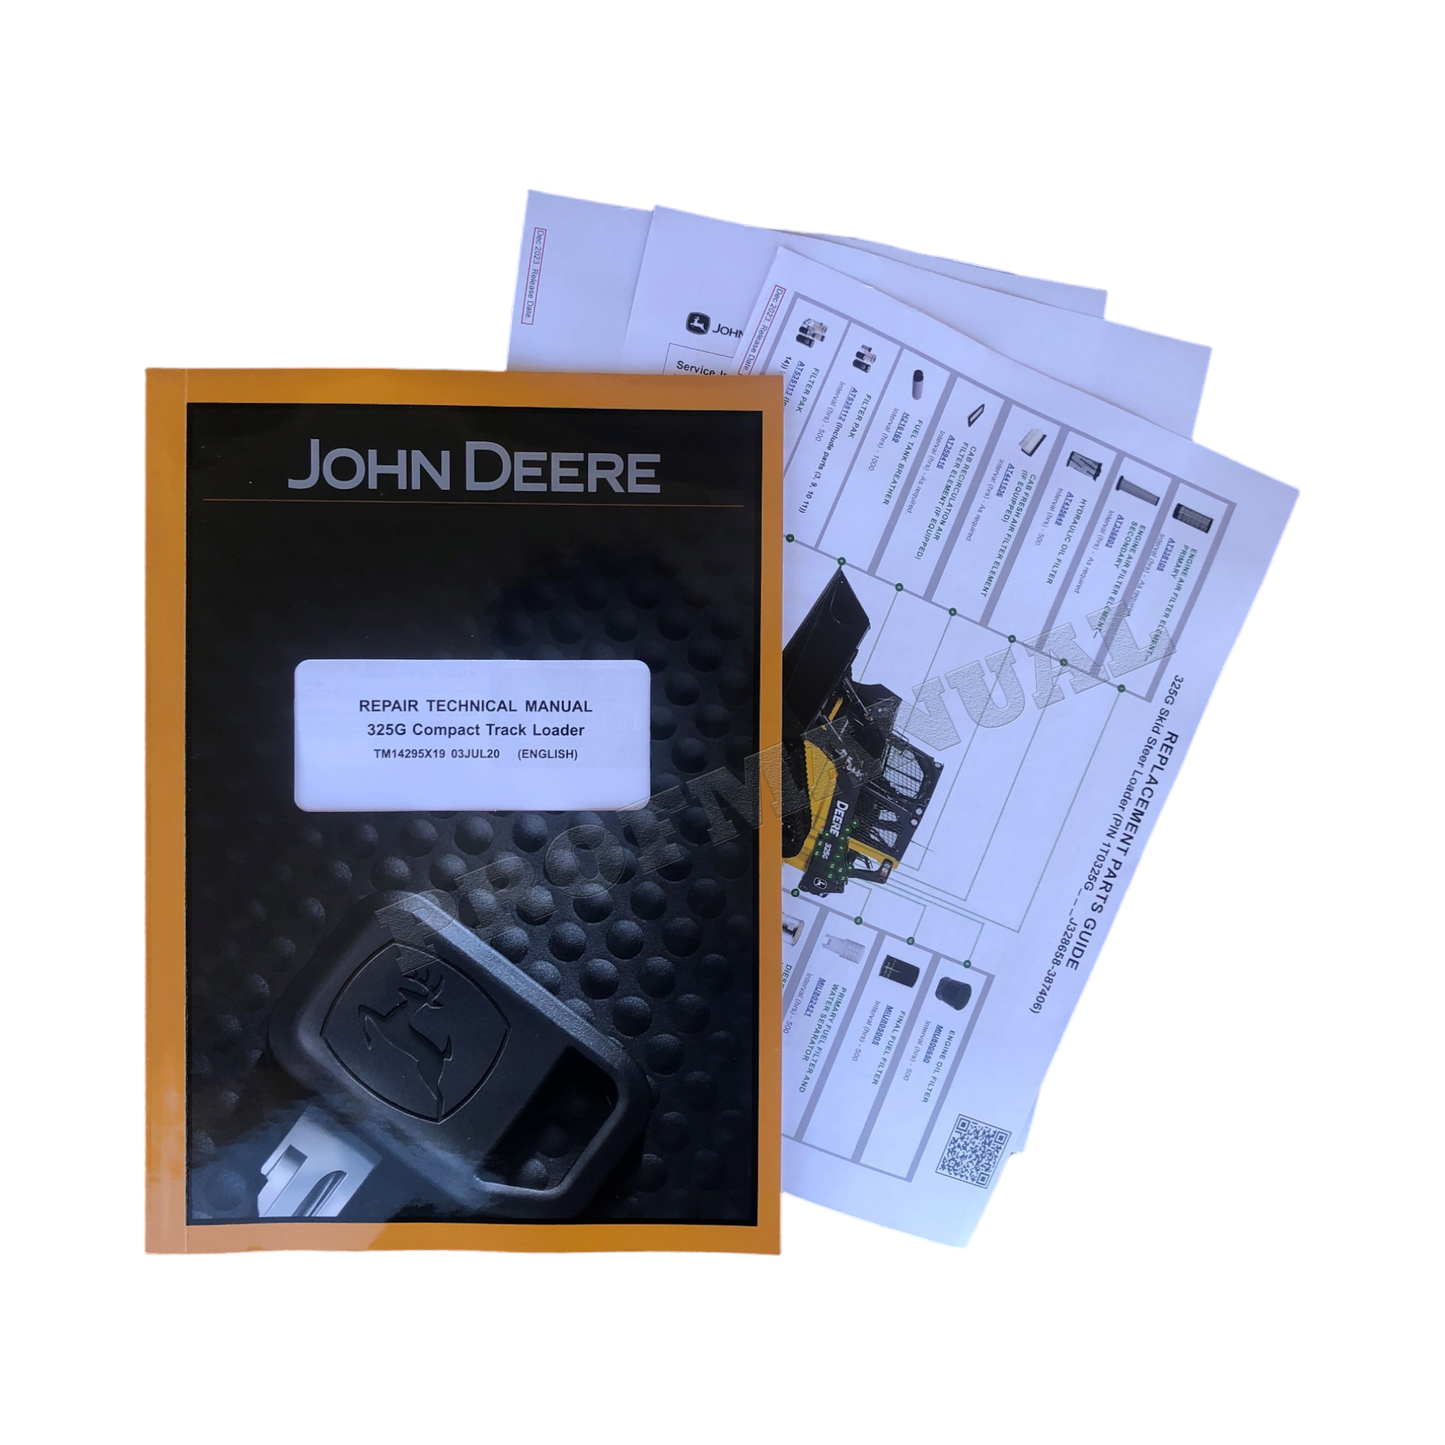 JOHN DEERE 325G COMPACK TRACK LOADER REPAIR SERVICE MANUAL ser J328658 -+ !BONUS!